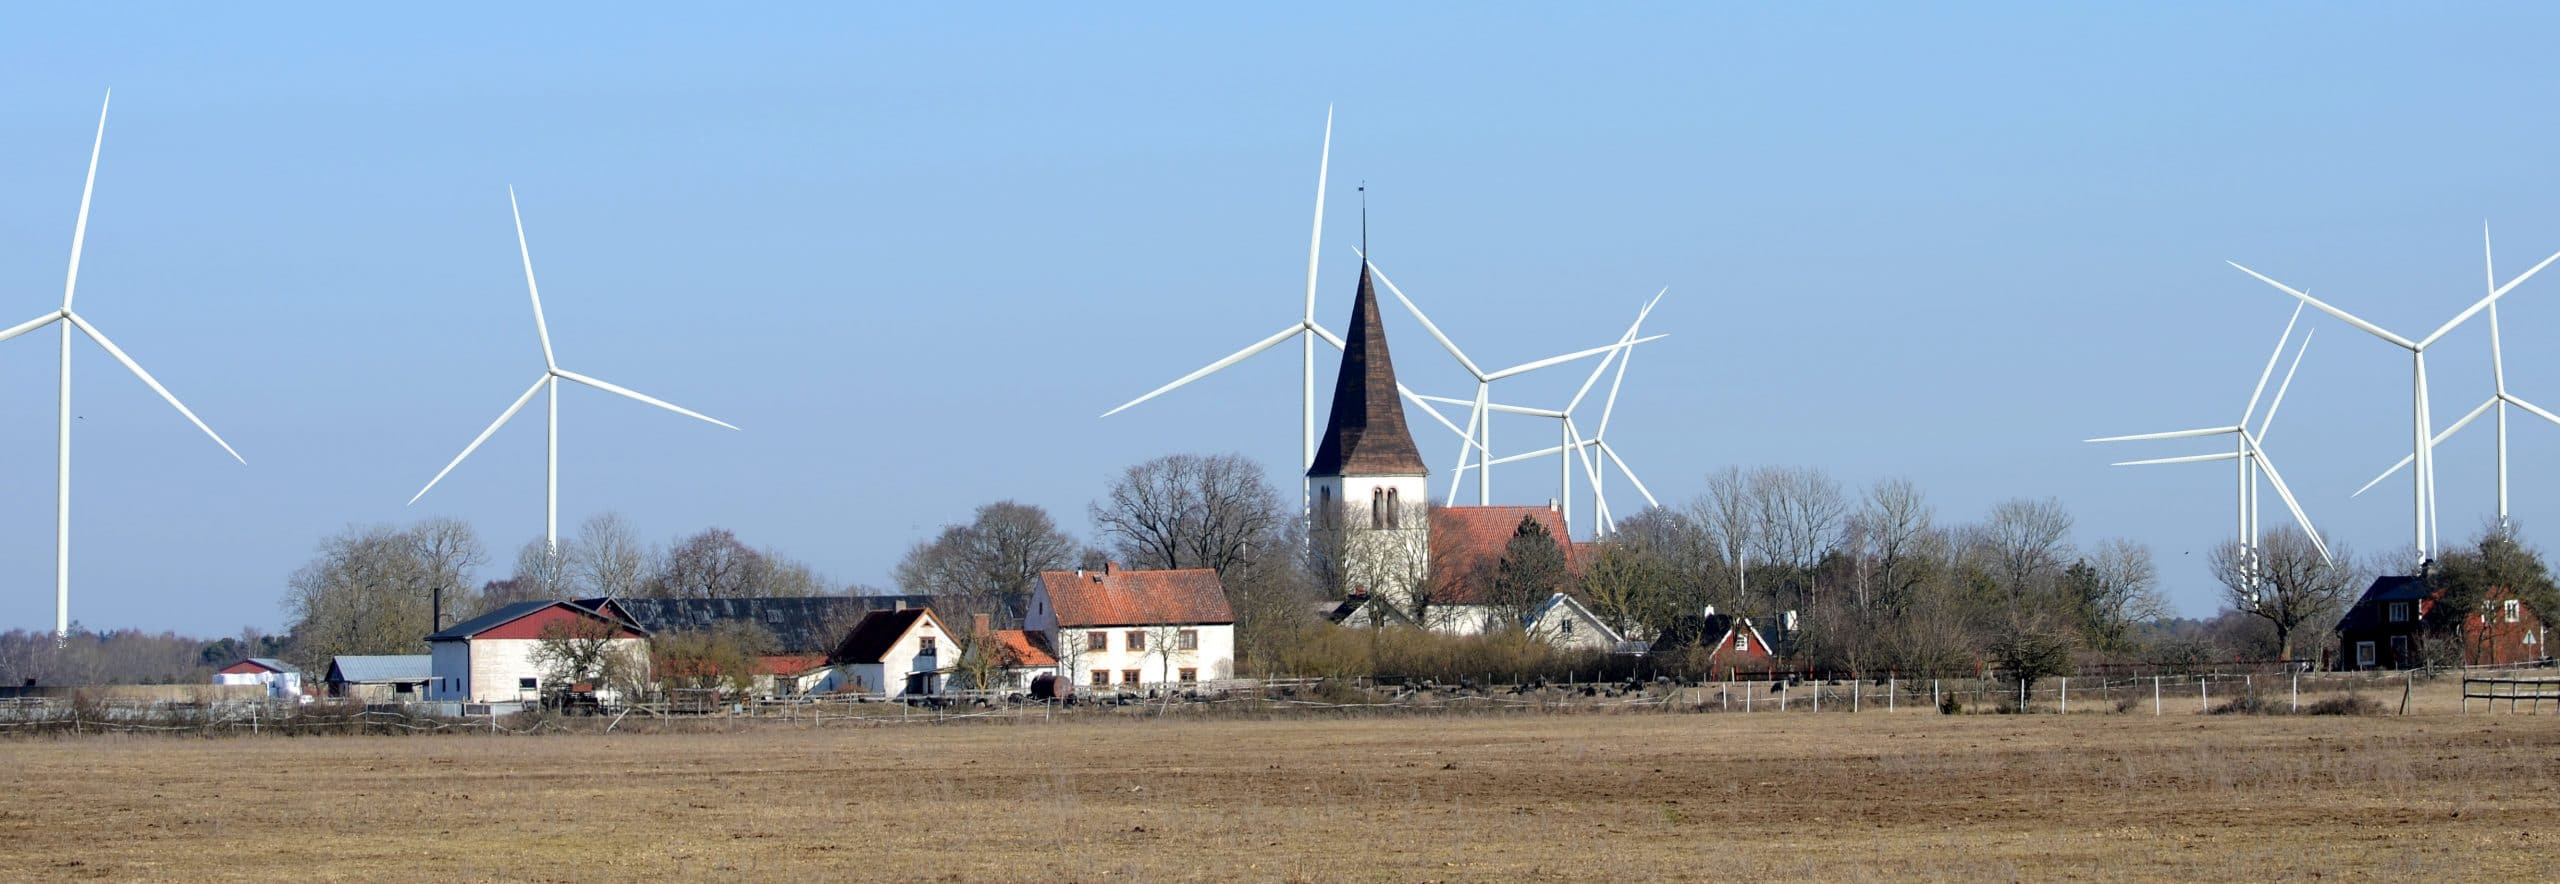 Bilden visar välbevarade Silte kyrka. Bakom kyrkan, mot klarblå himmel sticker 10 vindsnurror upp. 